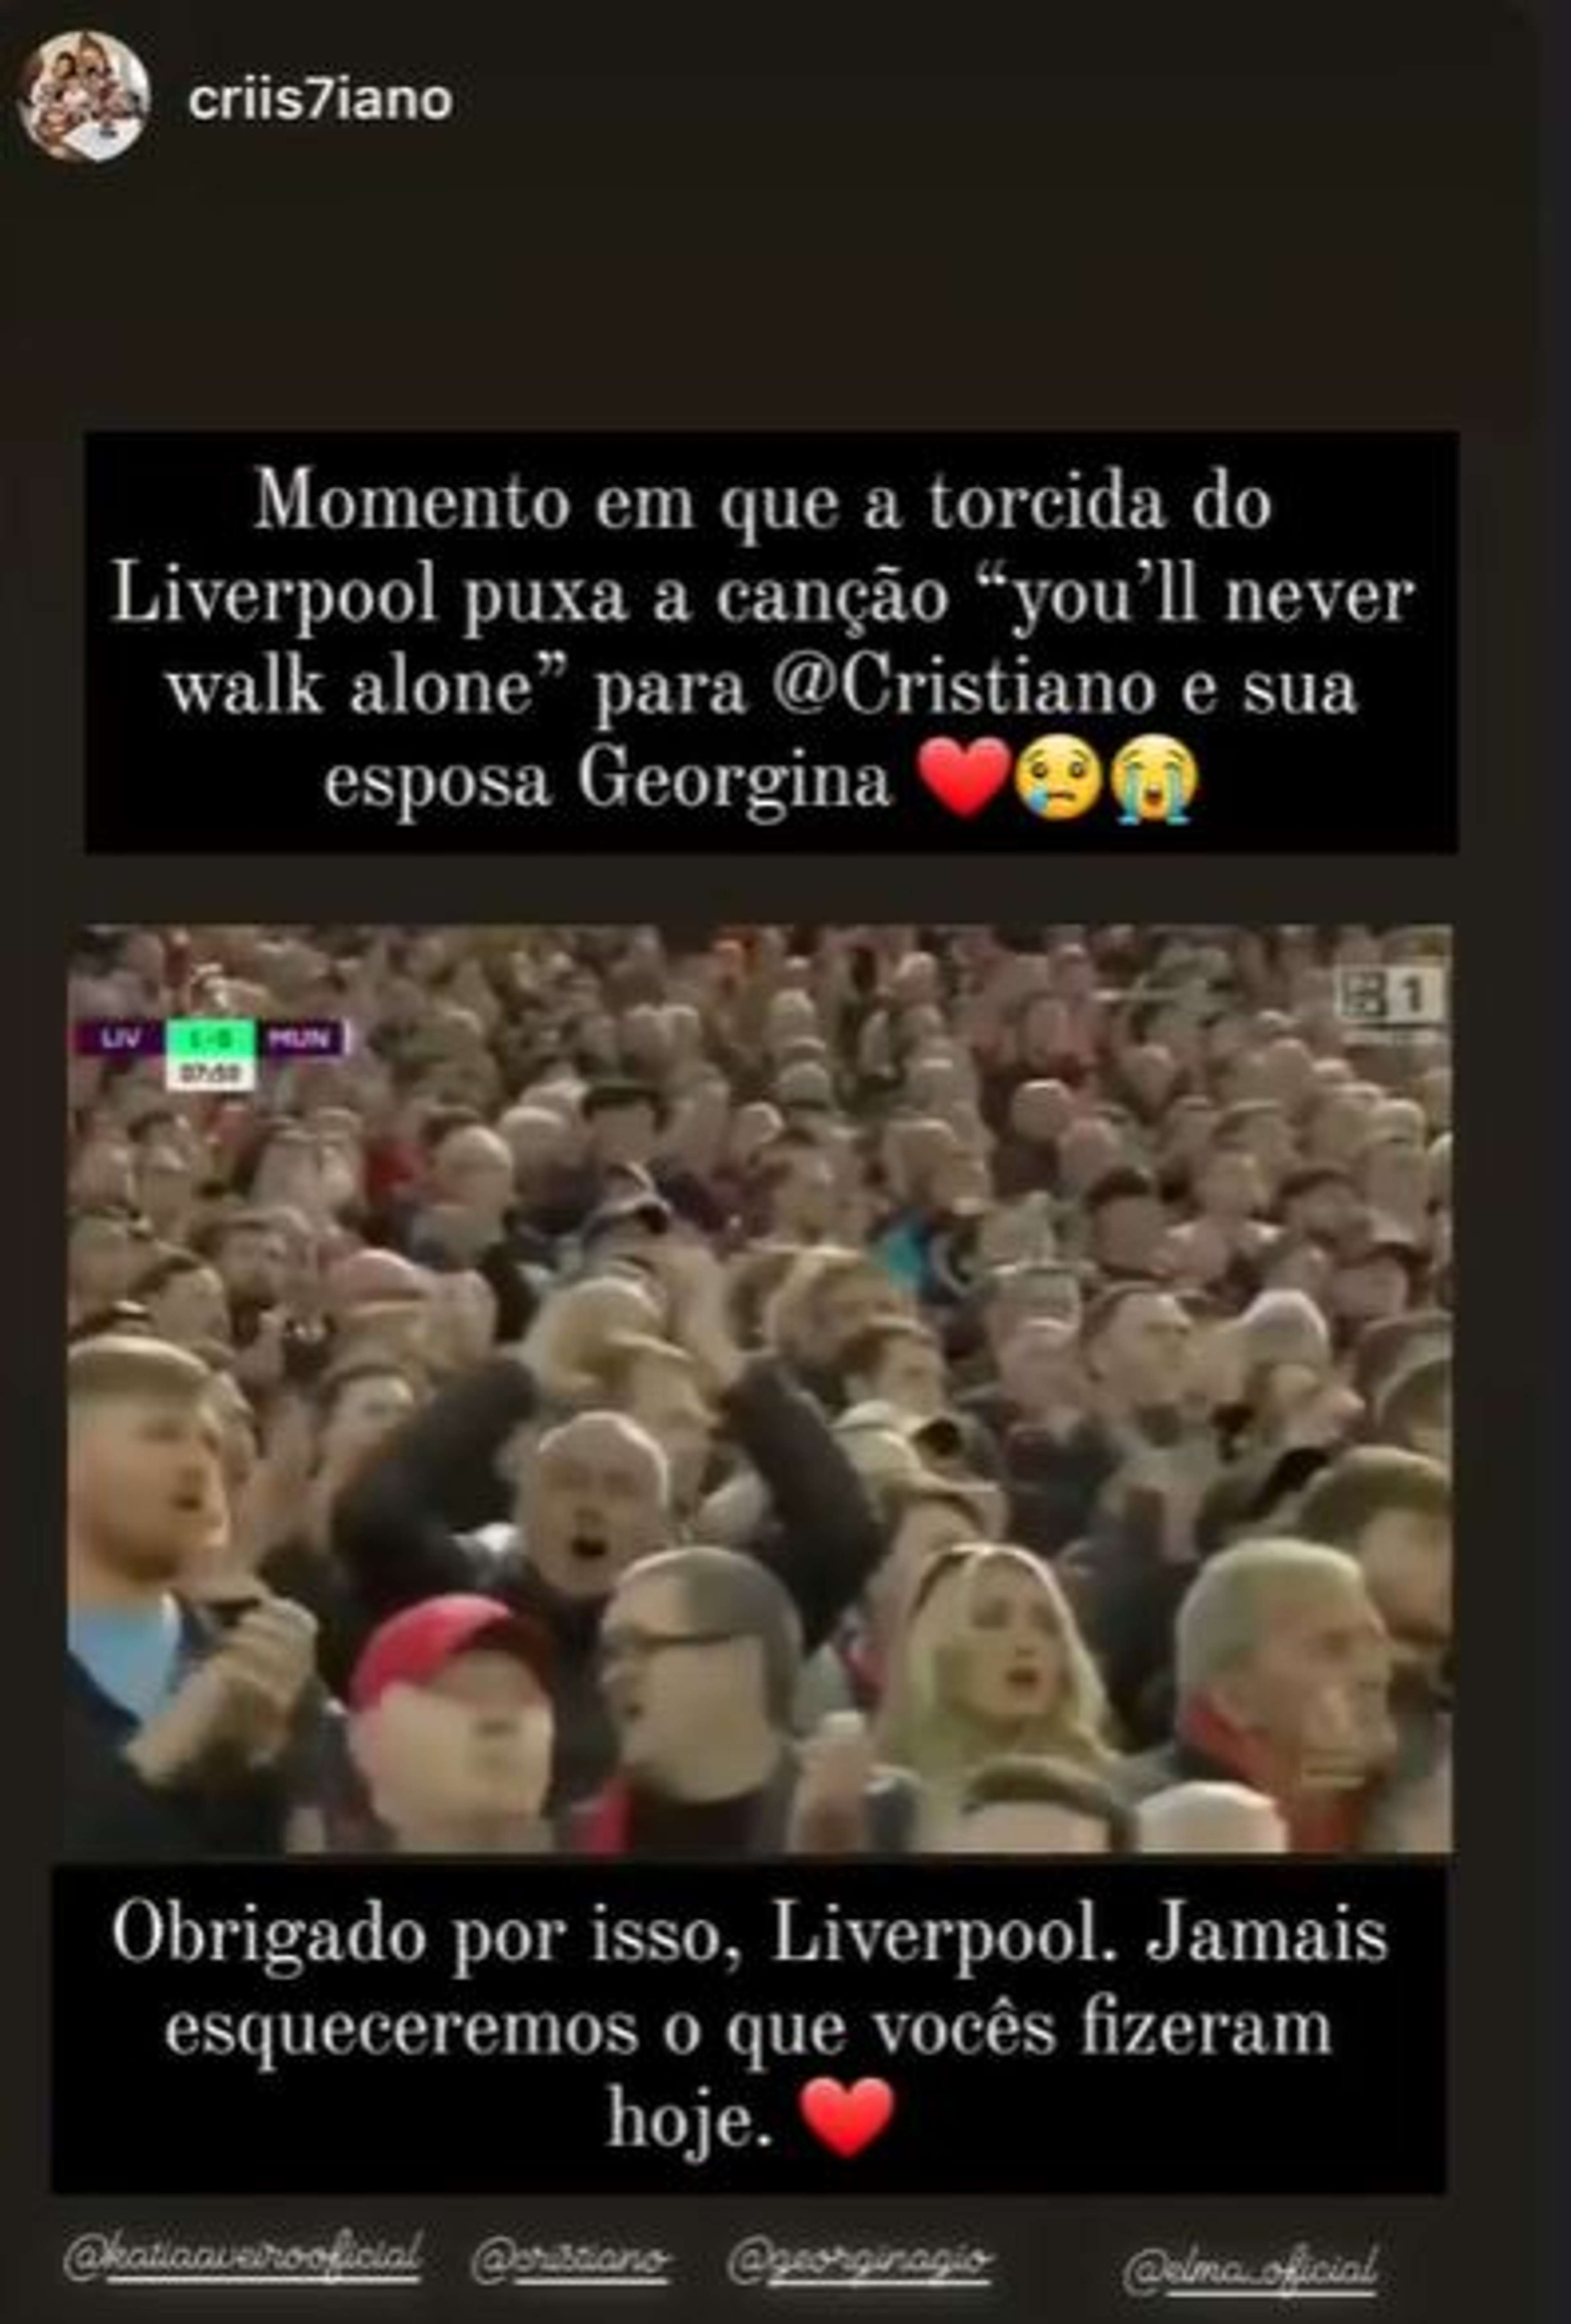 Elma Dos Santos Aveiro Cristiano Ronaldo Anfield tribute